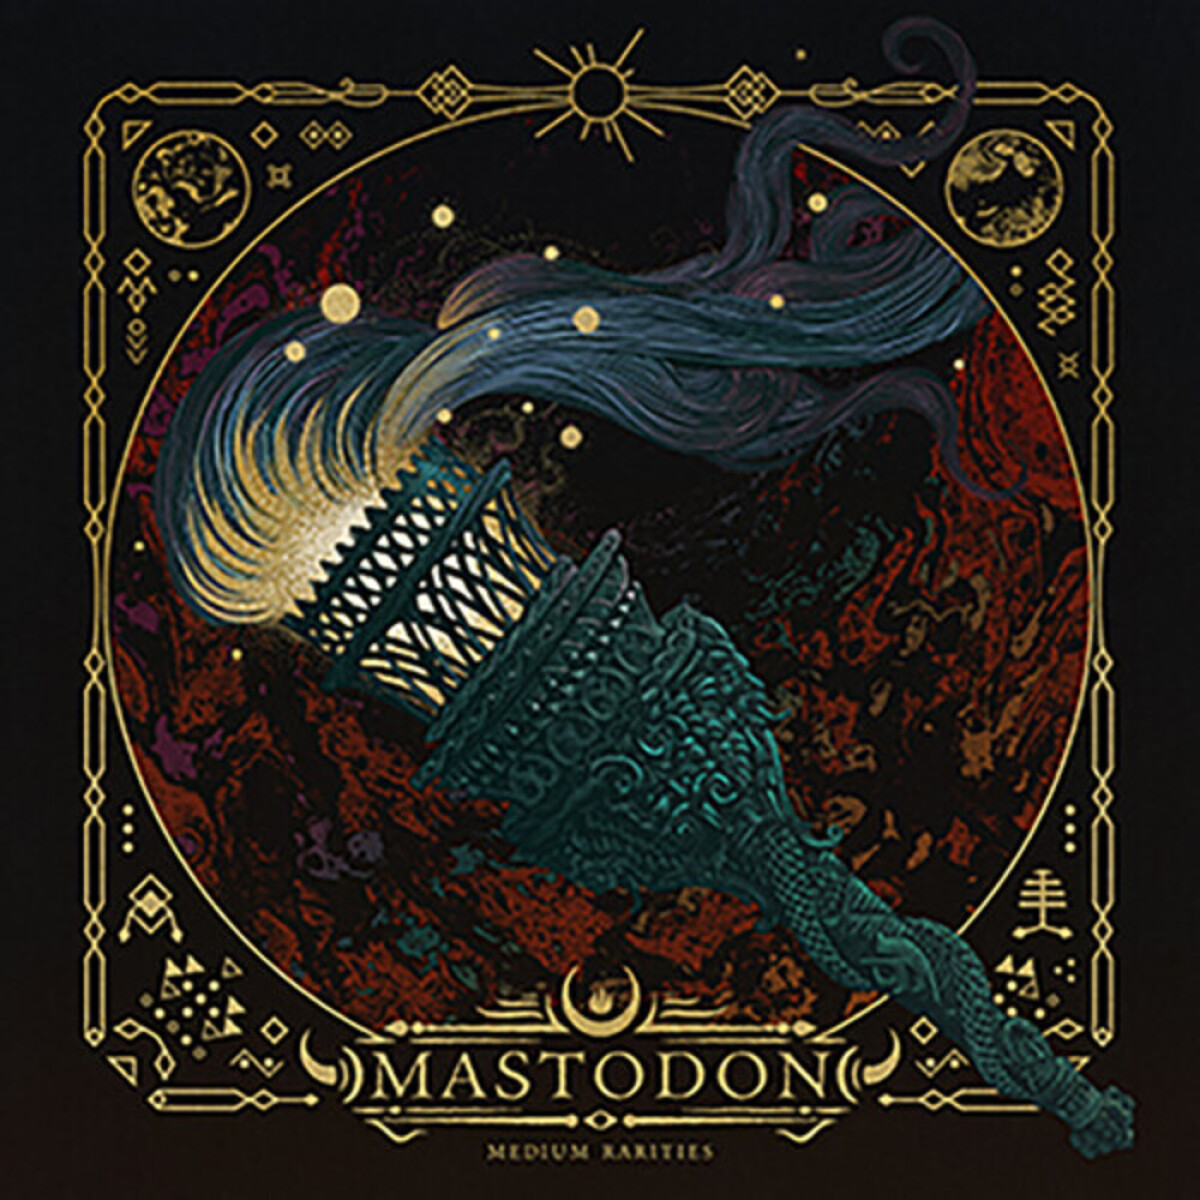 (l) Mastodon - Medium Rarities - Vinilo 